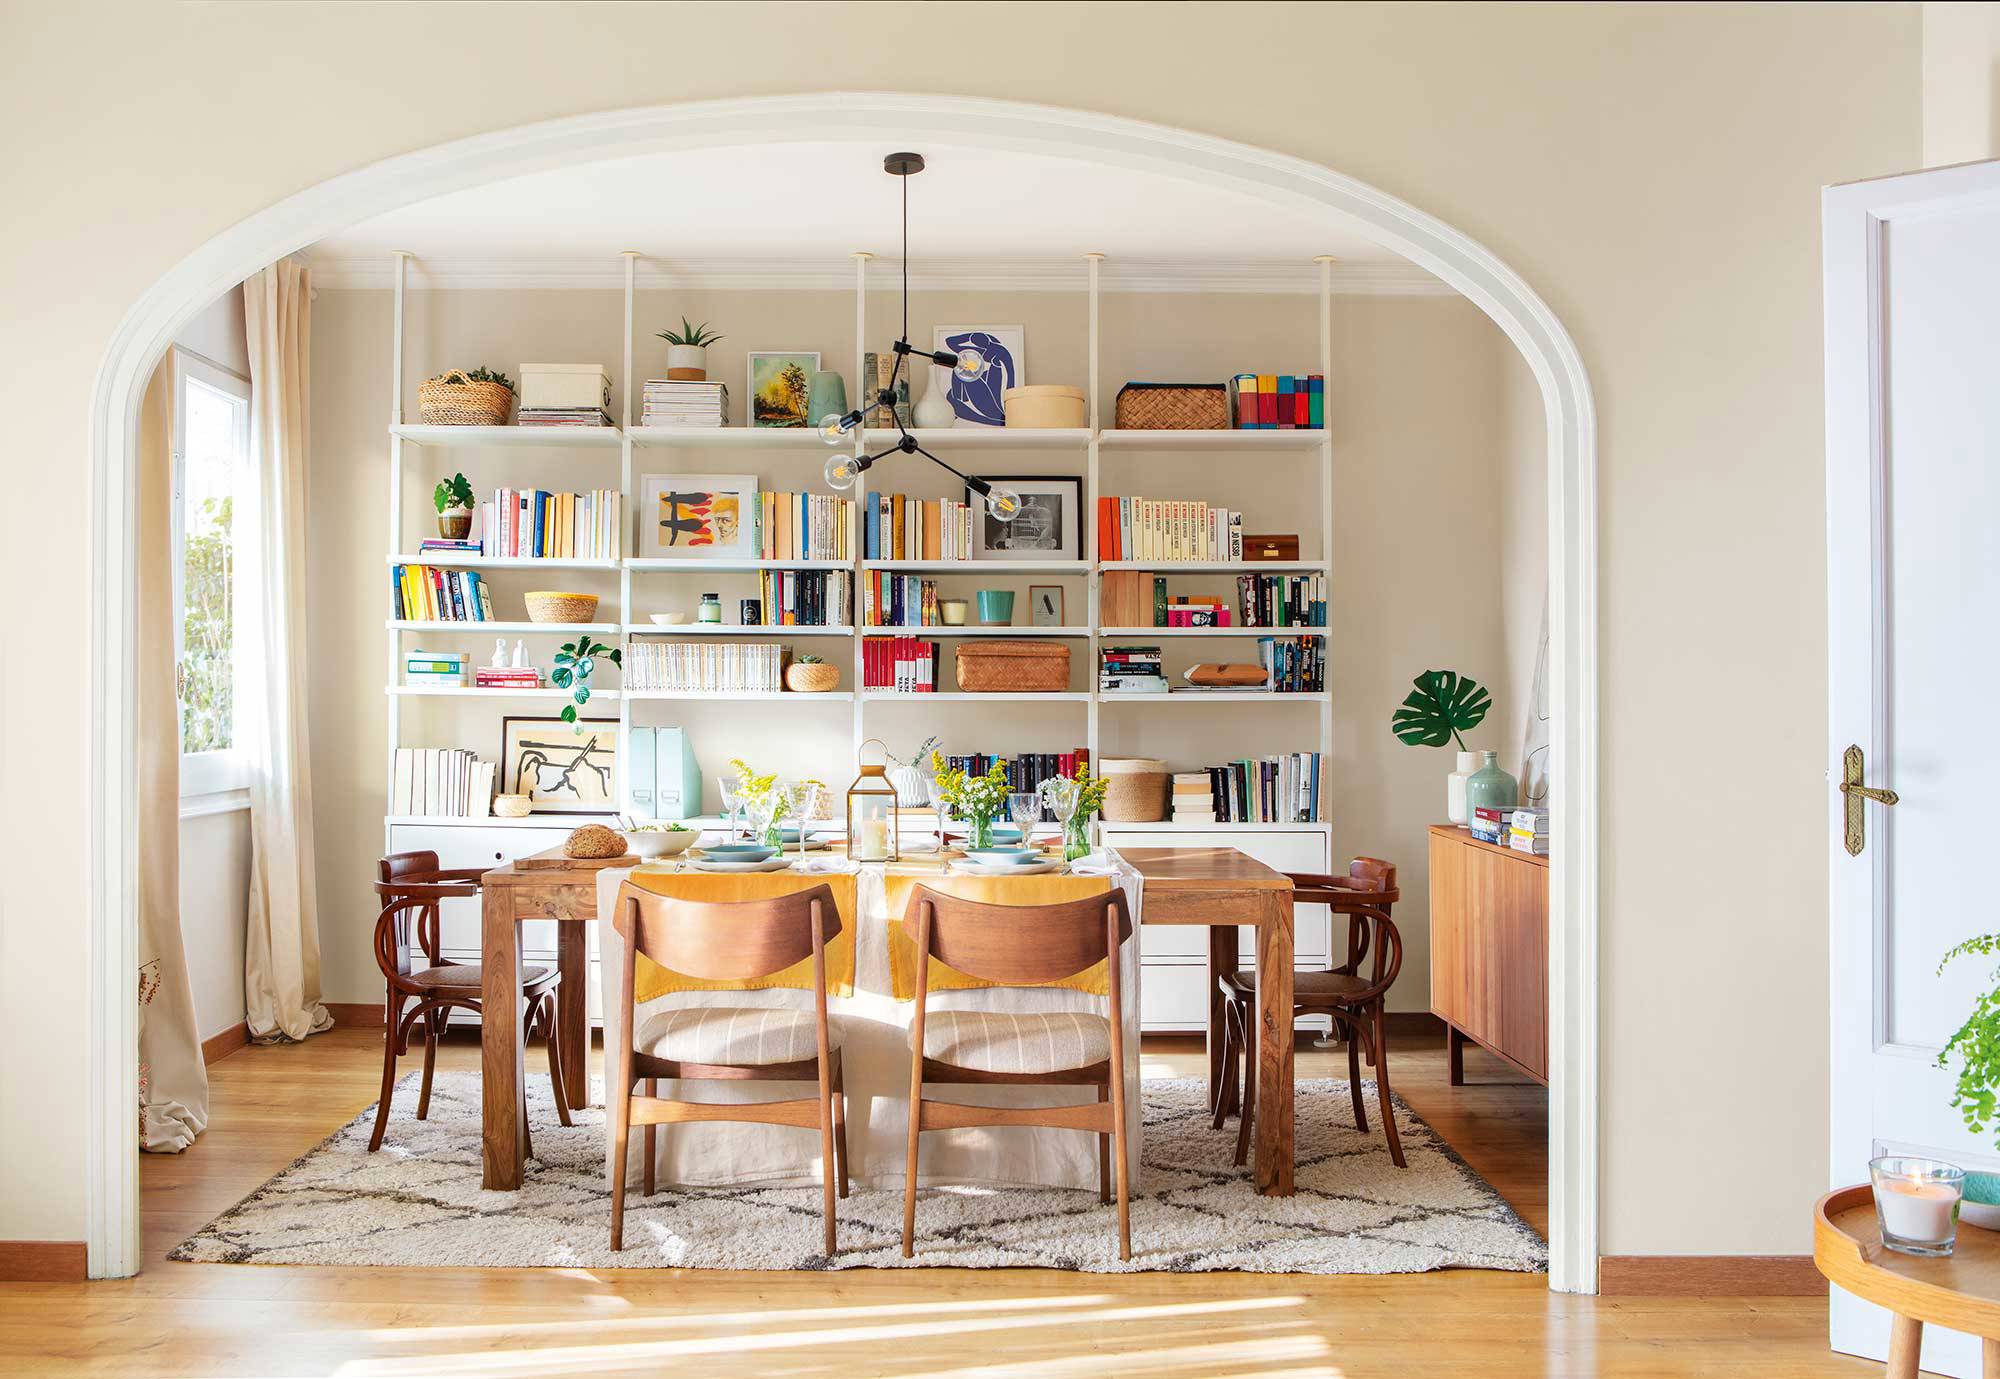 Comedor con arco, librería abierta, sillas diferentes y alfombra de diseño geométrico.